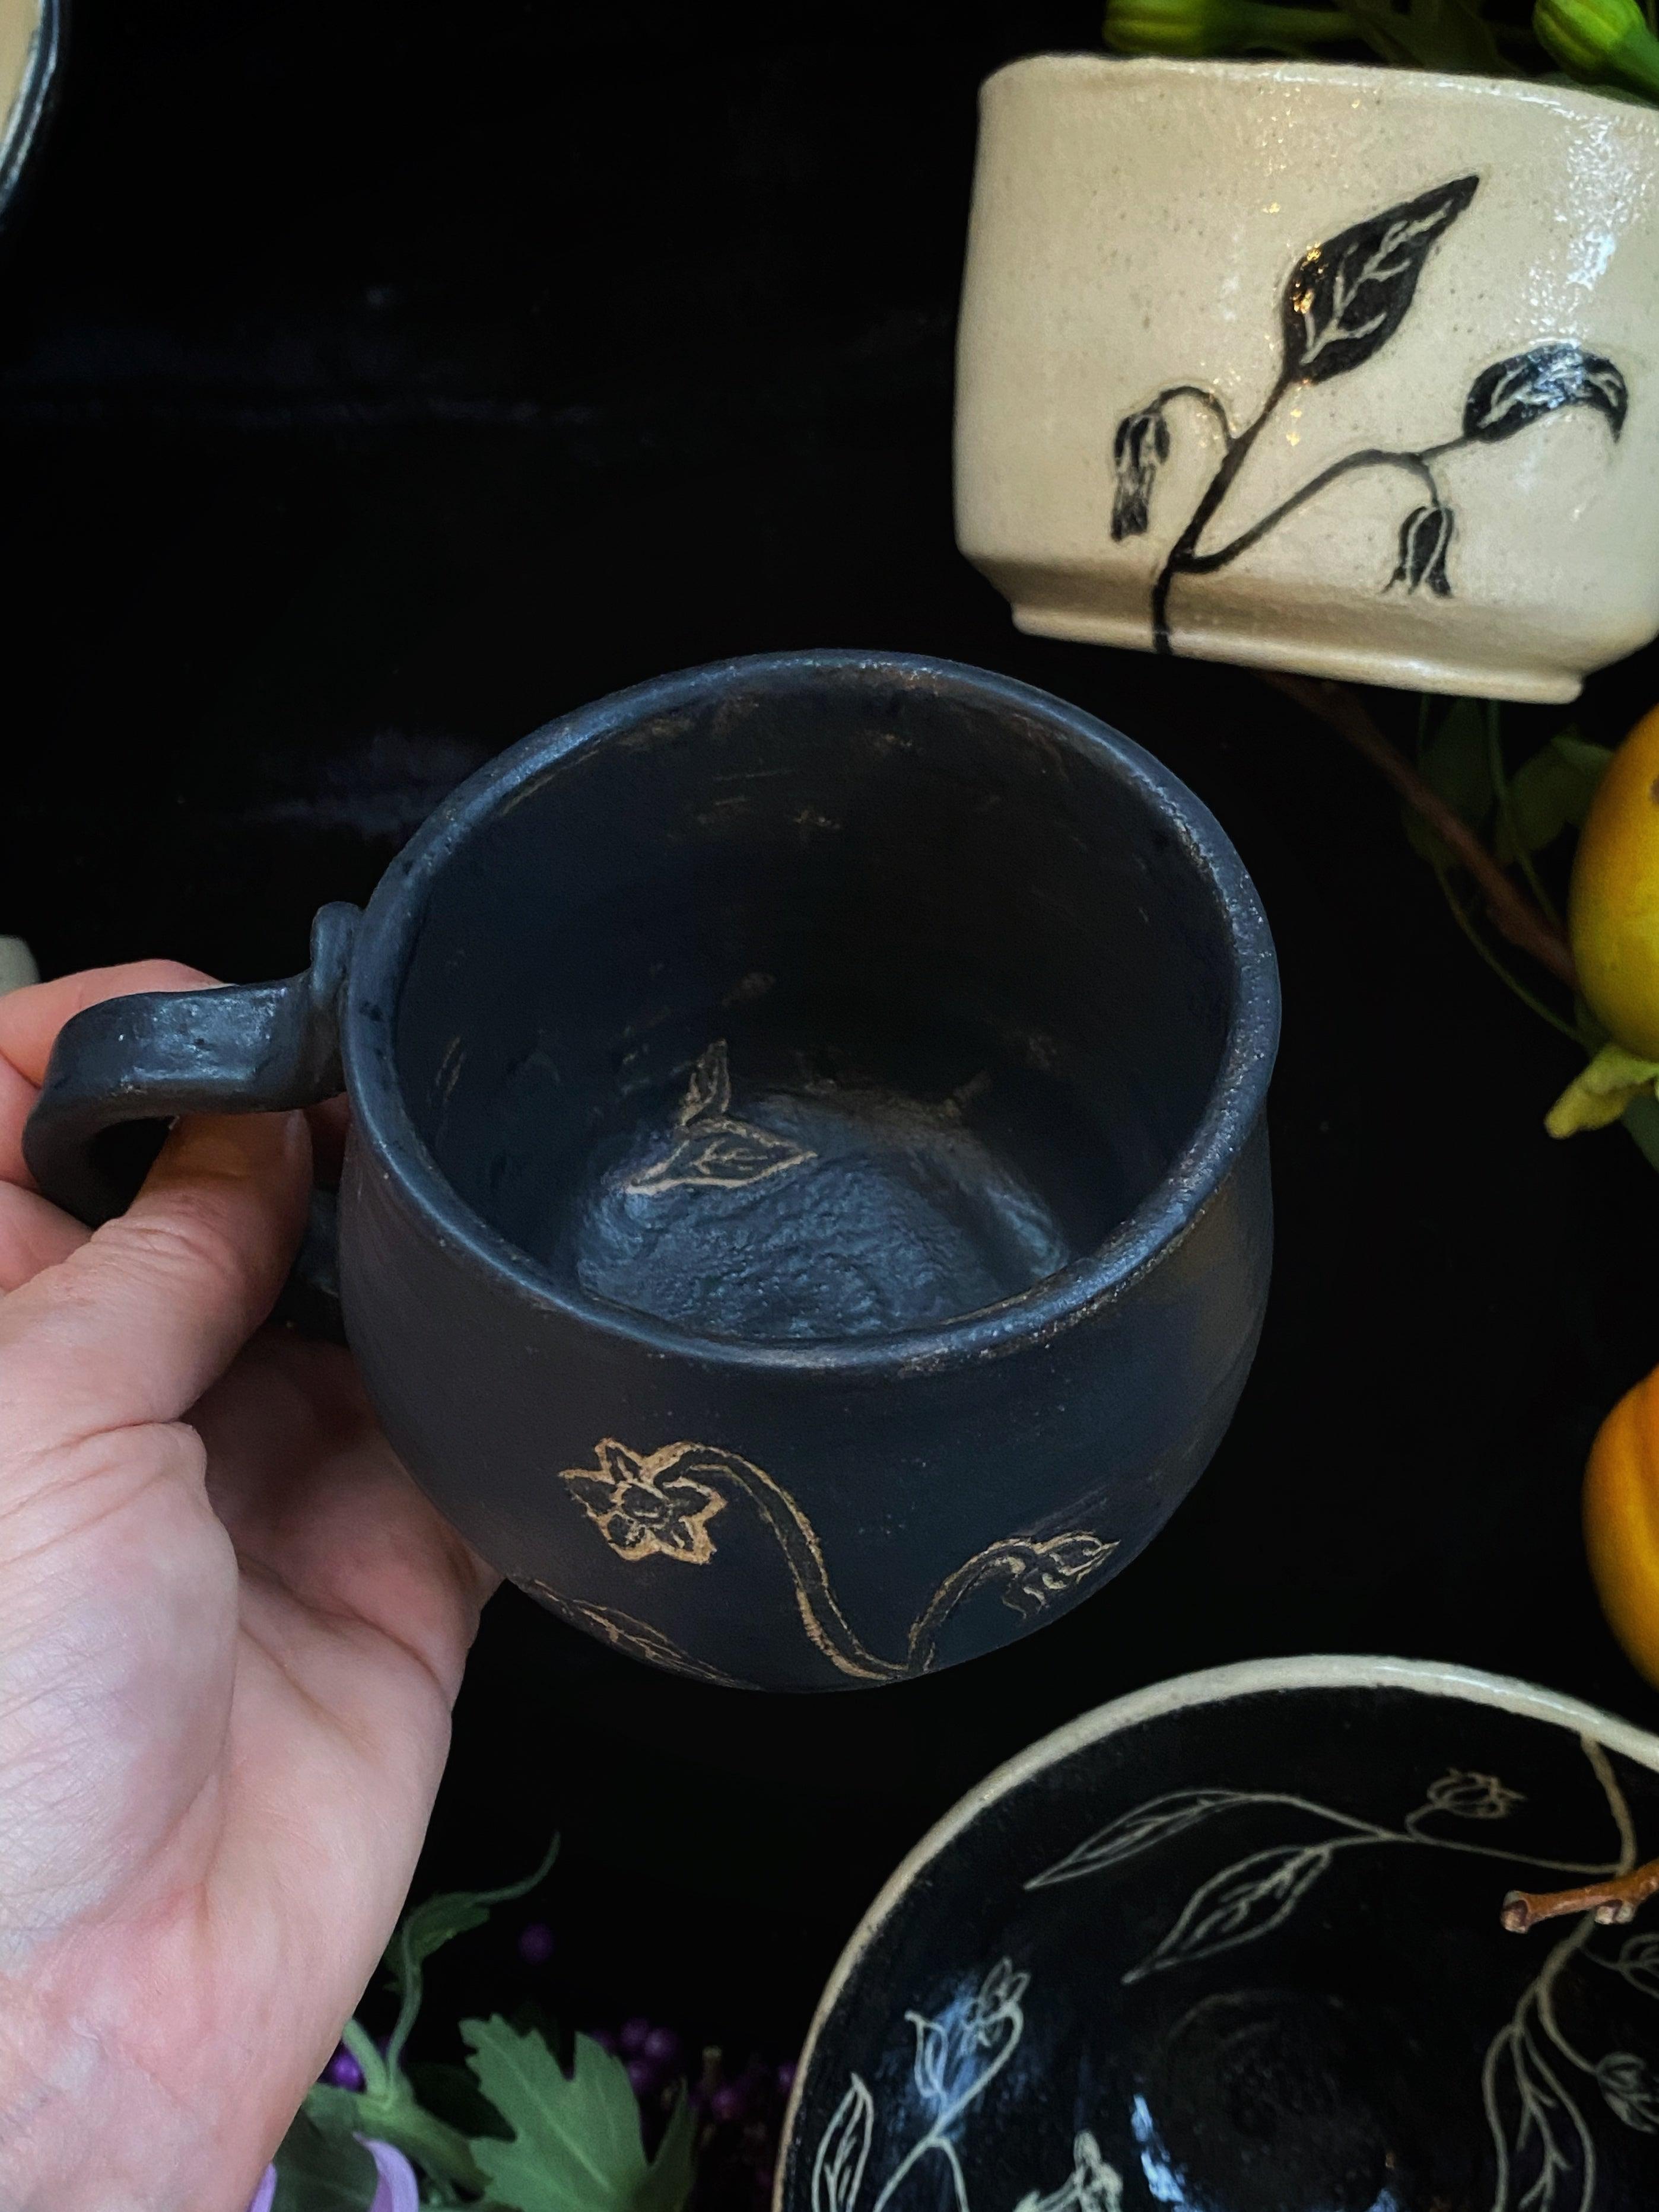 Black Sgraffito Belladonna Mugs, Cups, & Bowls - Keven Craft Rituals